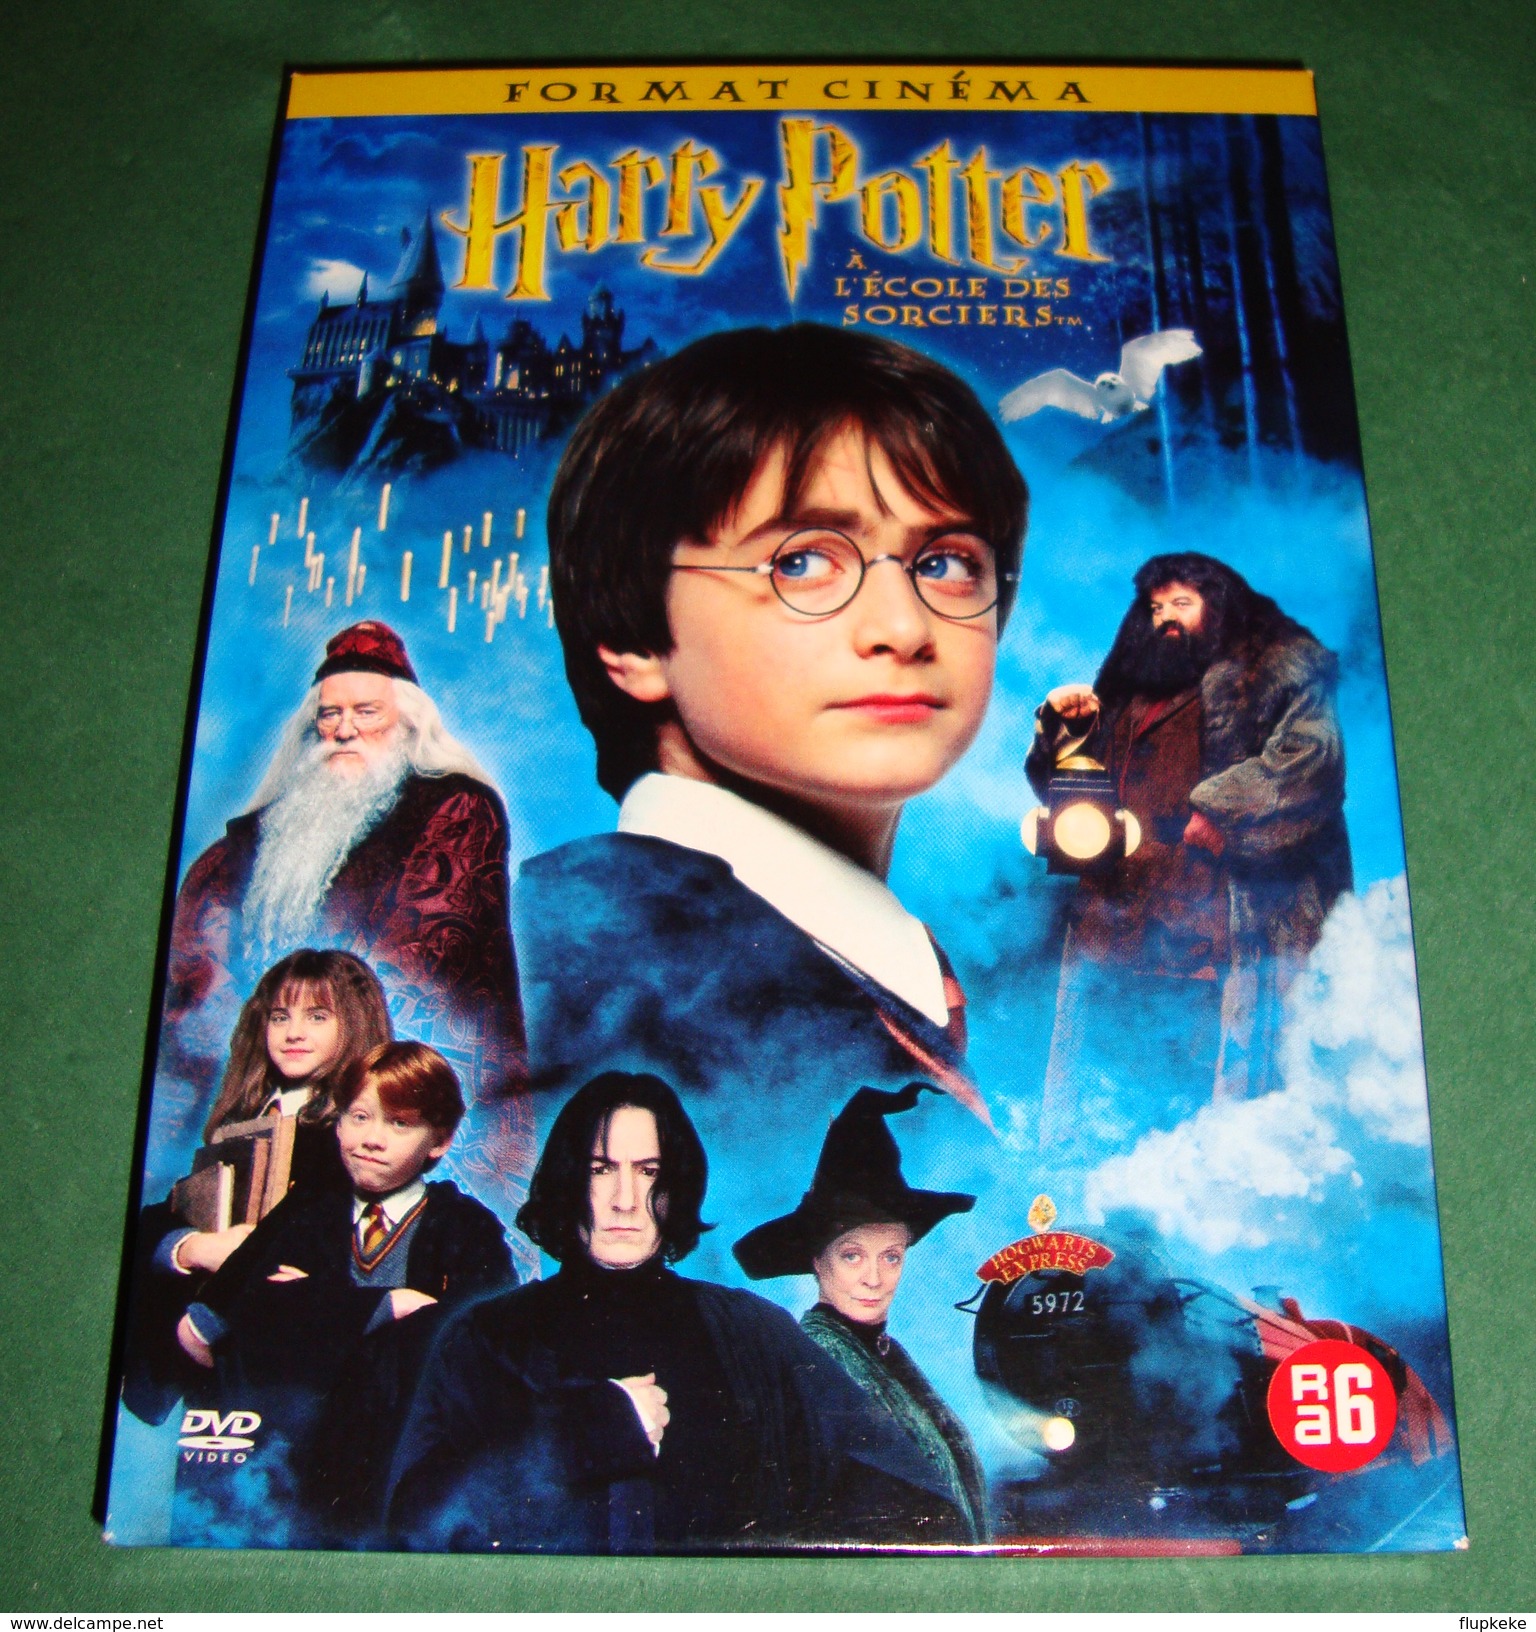 Dvd Zone 2 Harry Potter à L'école Des Sorciers (2001) Édition 2dvd Harry Potter And The Sorcerer's Stone Vf+Vostf - Sciences-Fictions Et Fantaisie